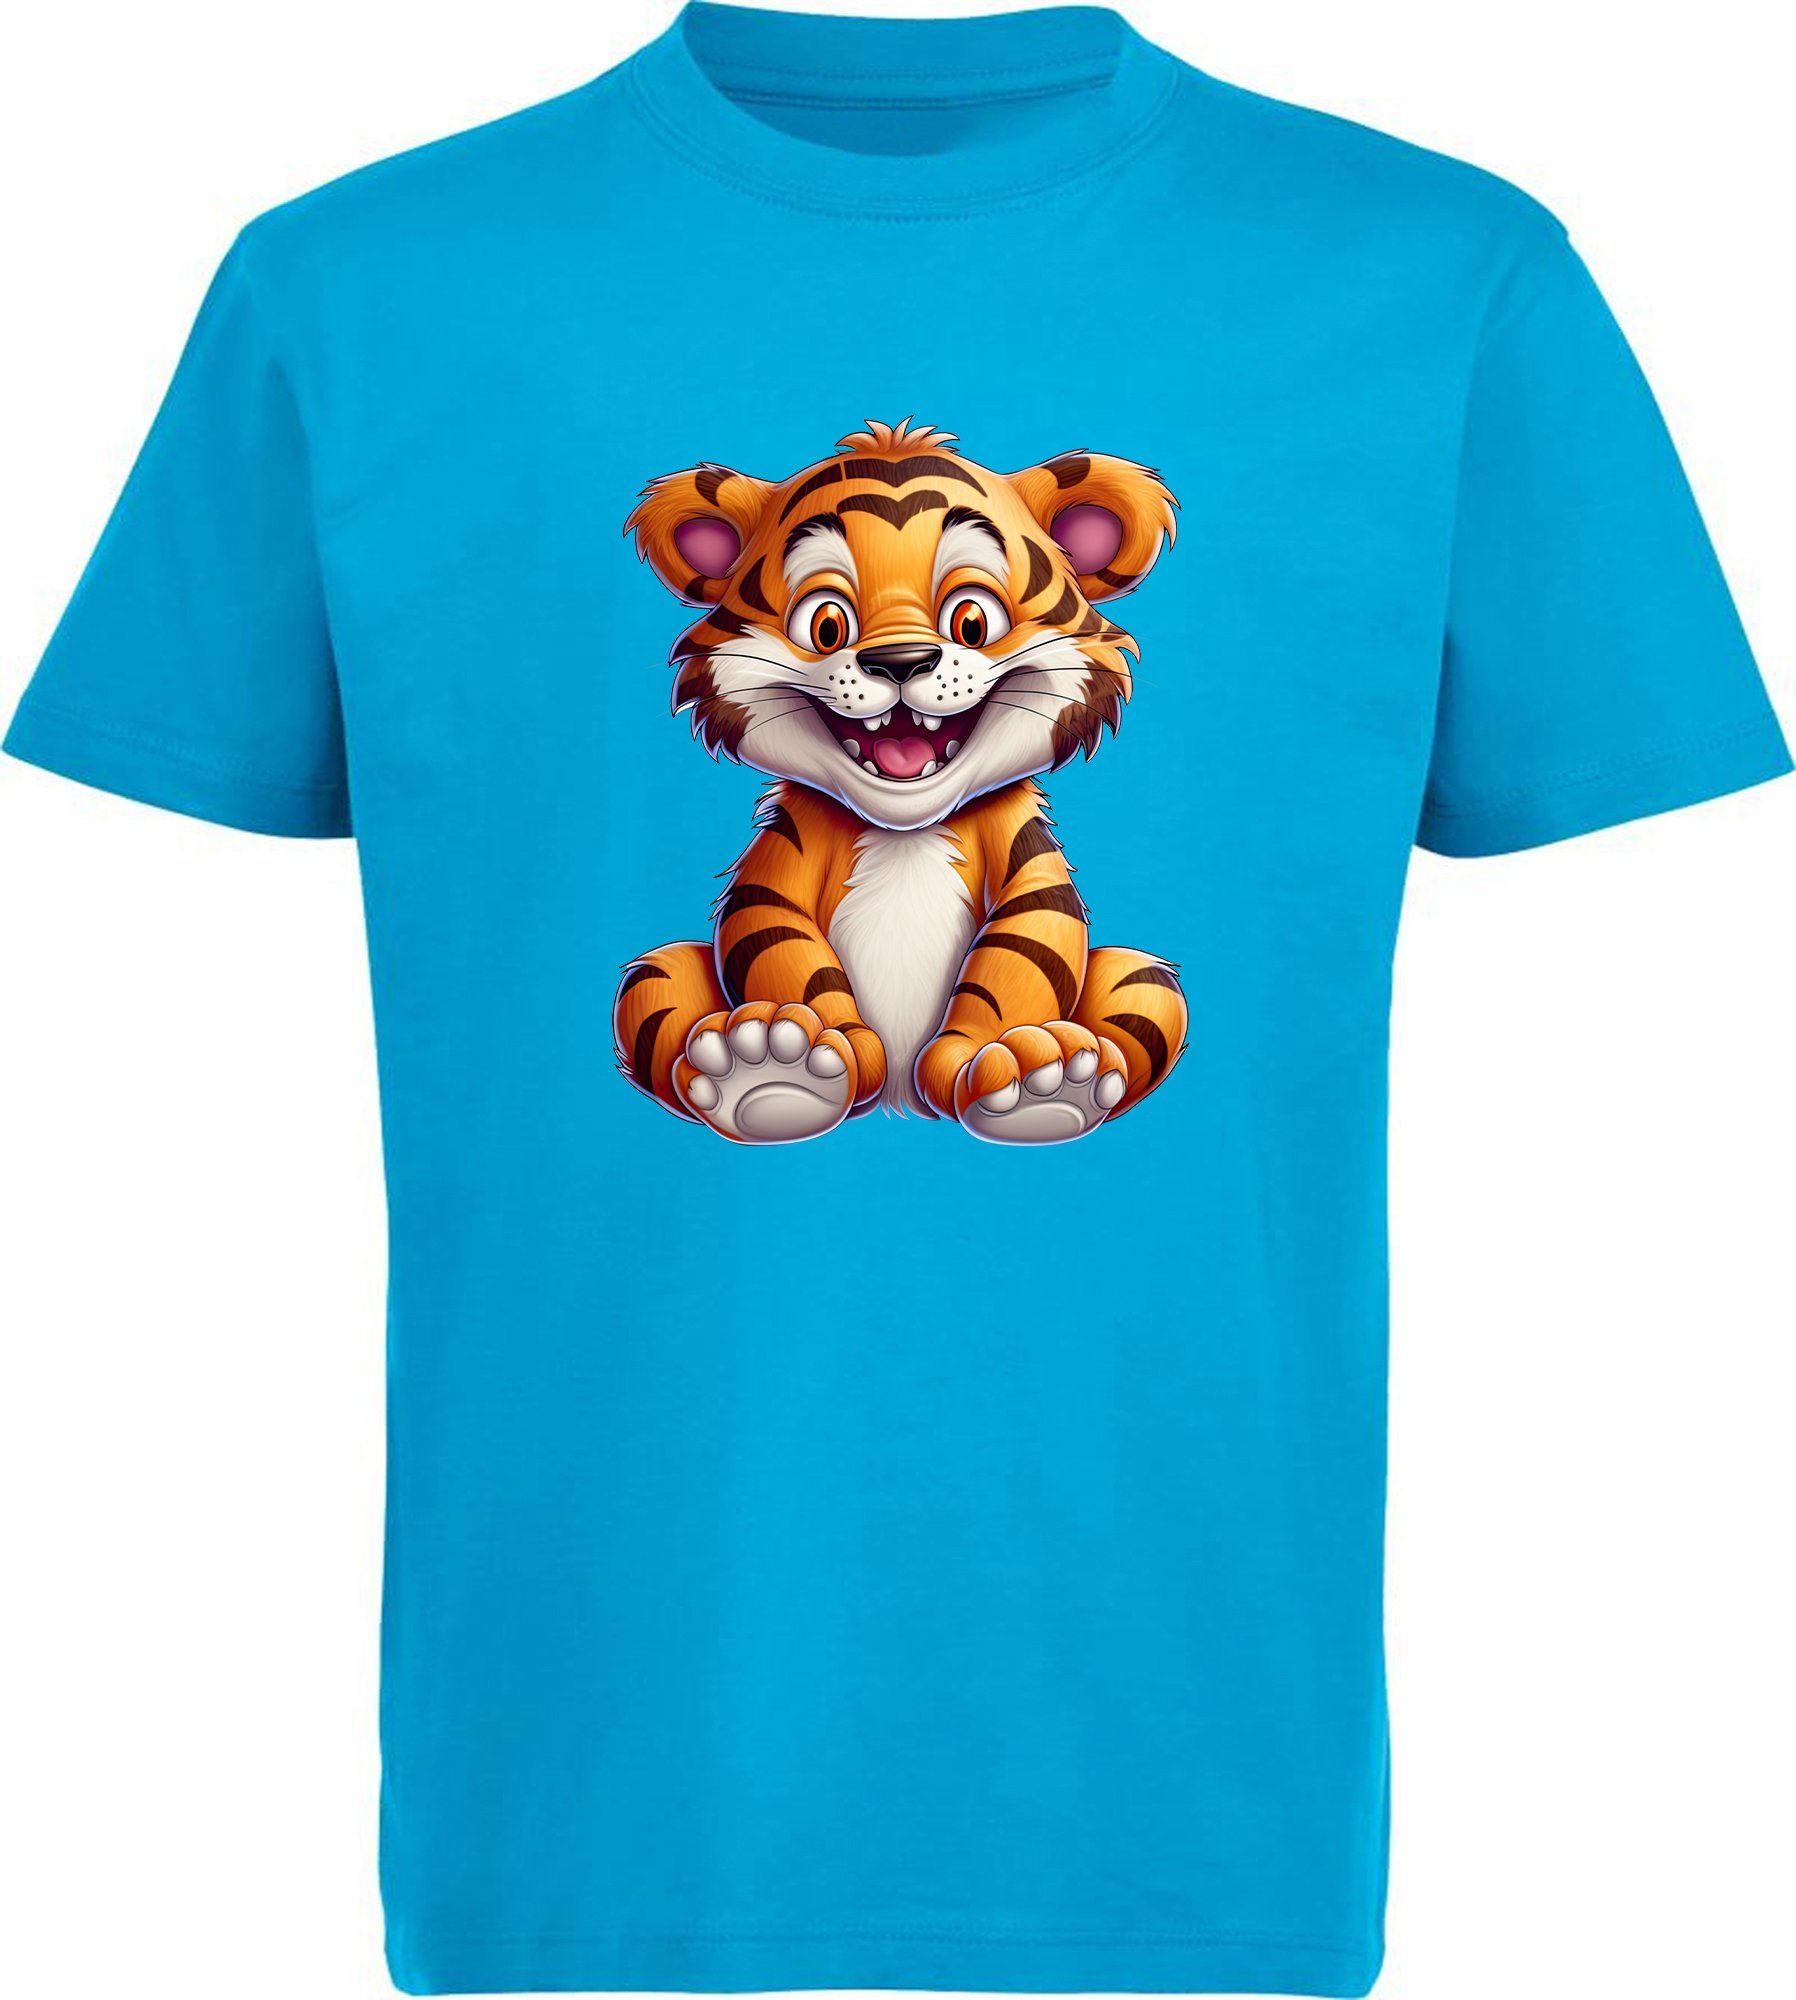 MyDesign24 T-Shirt Kinder Baby Print bedruckt Shirt aqua Aufdruck, Tiger mit - blau i278 Baumwollshirt Wildtier